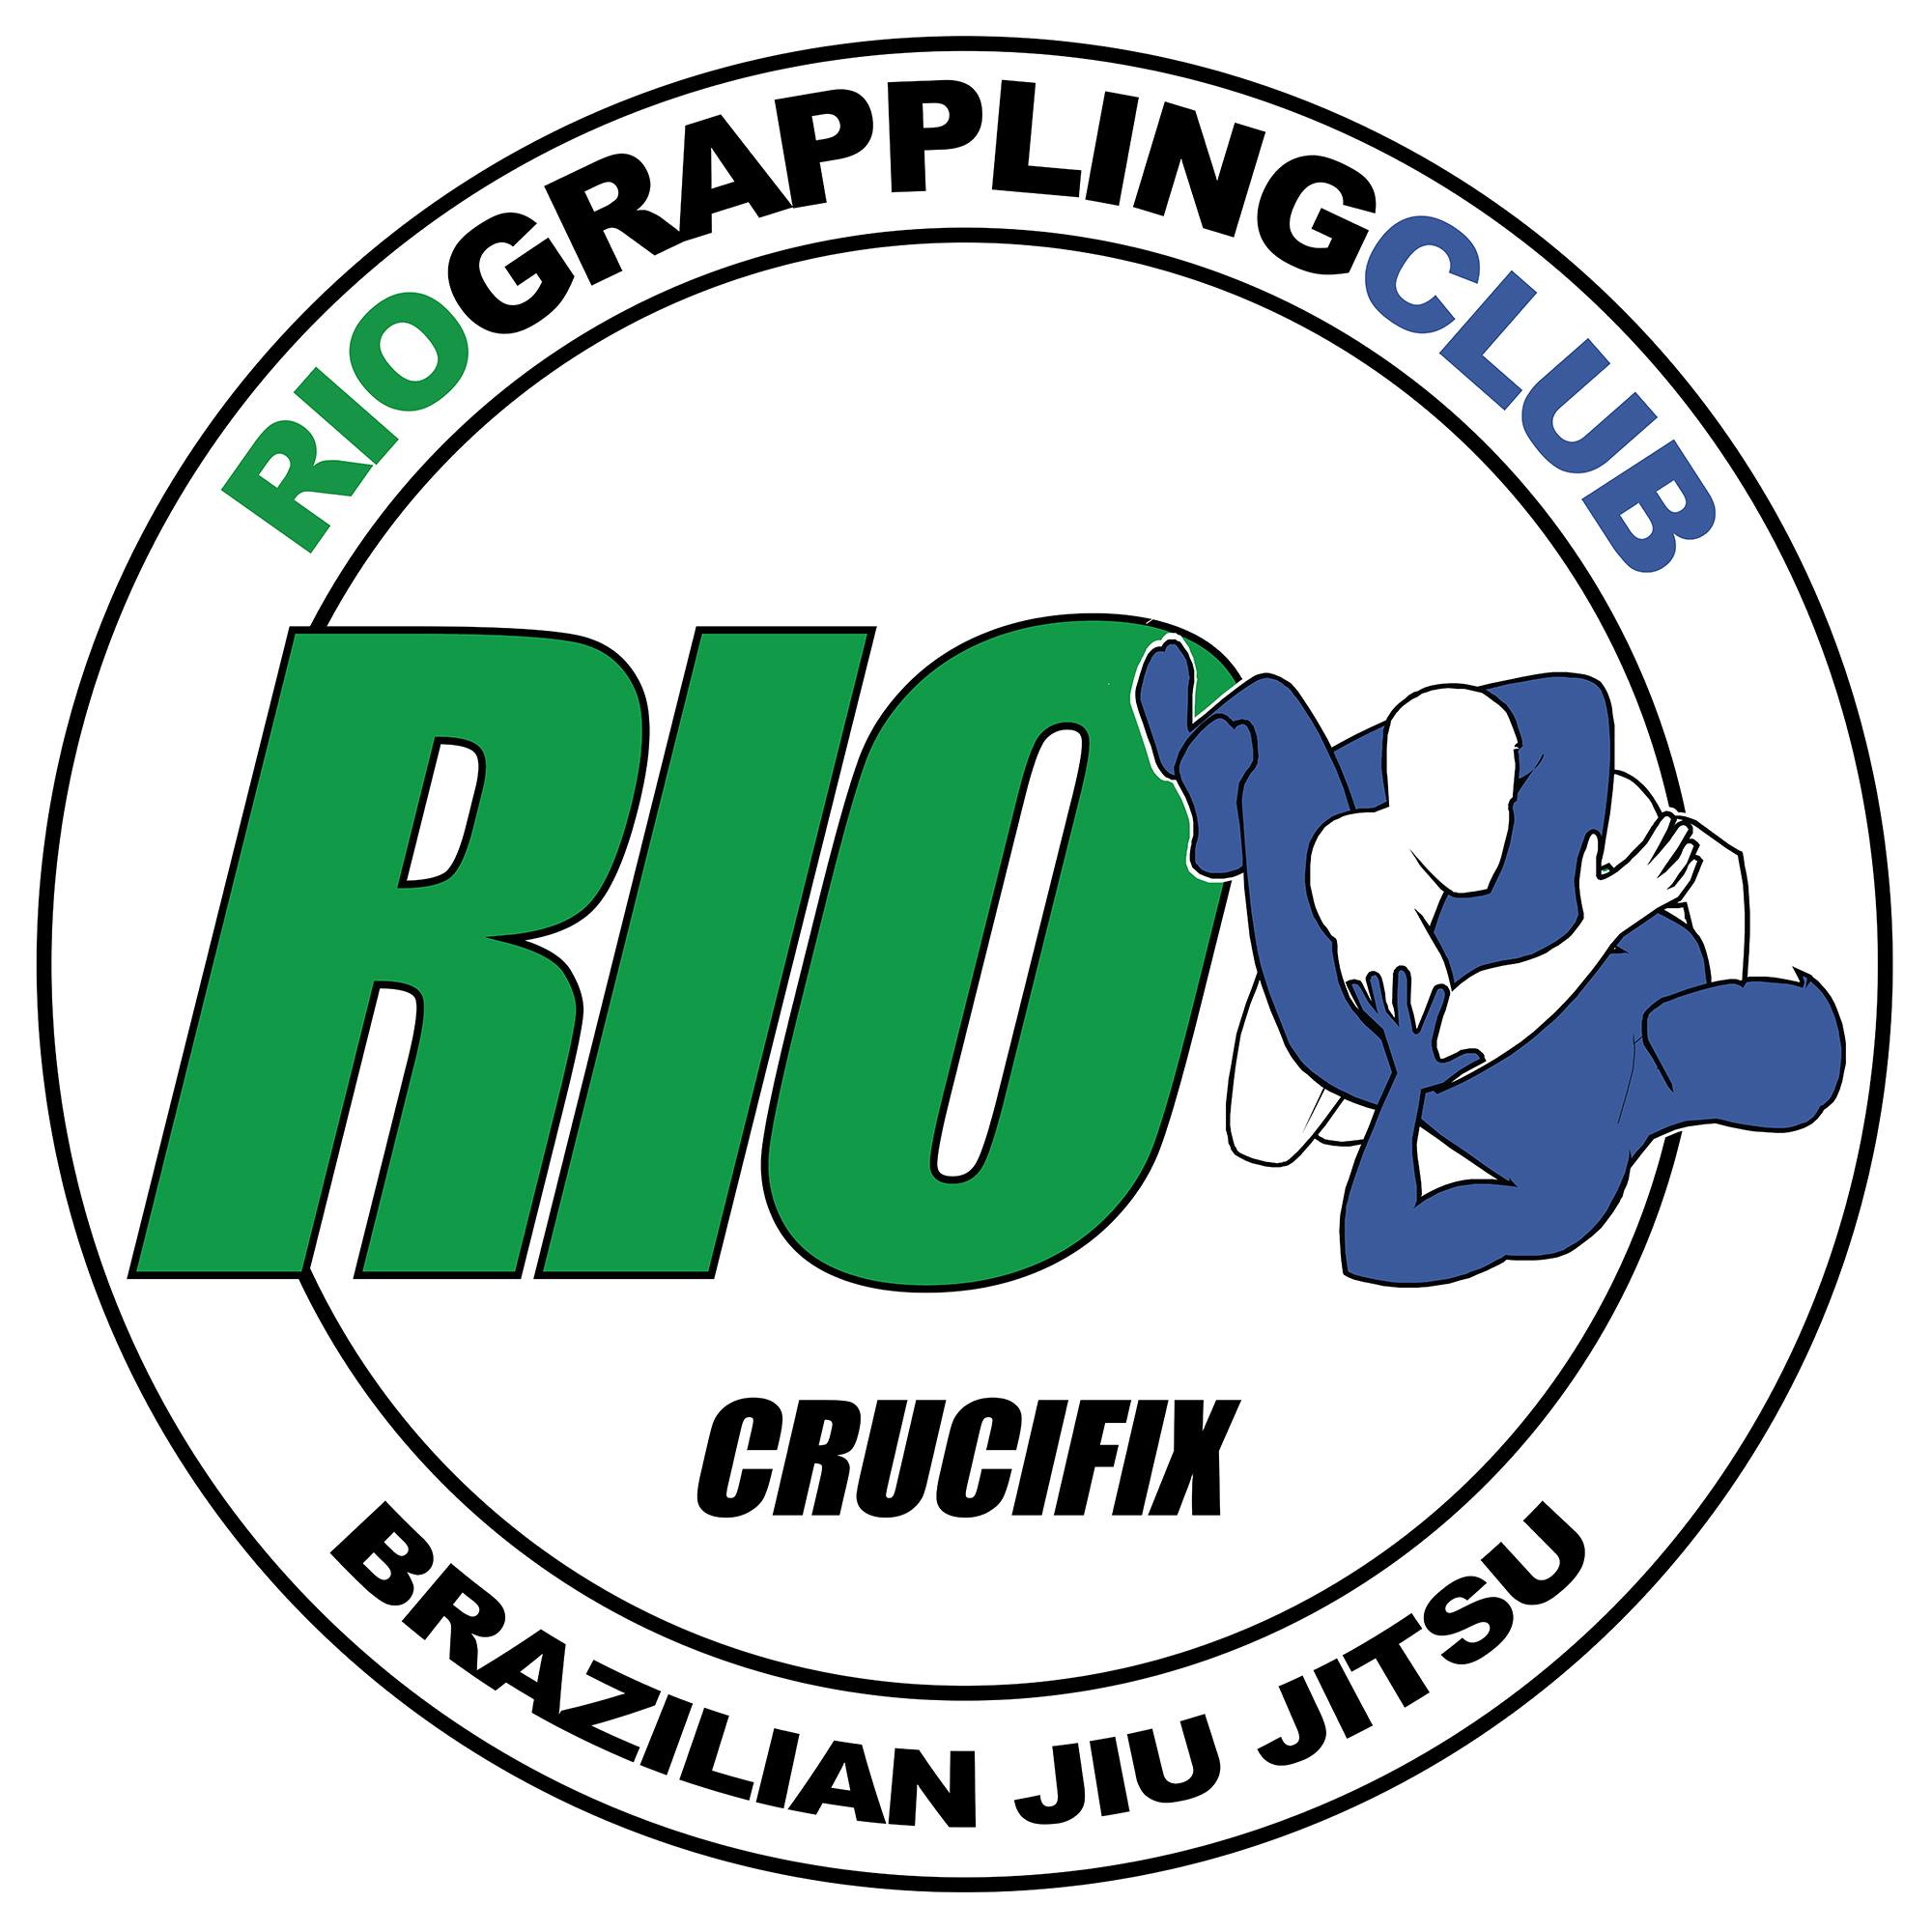 Rio Grappling Club Iron Grip